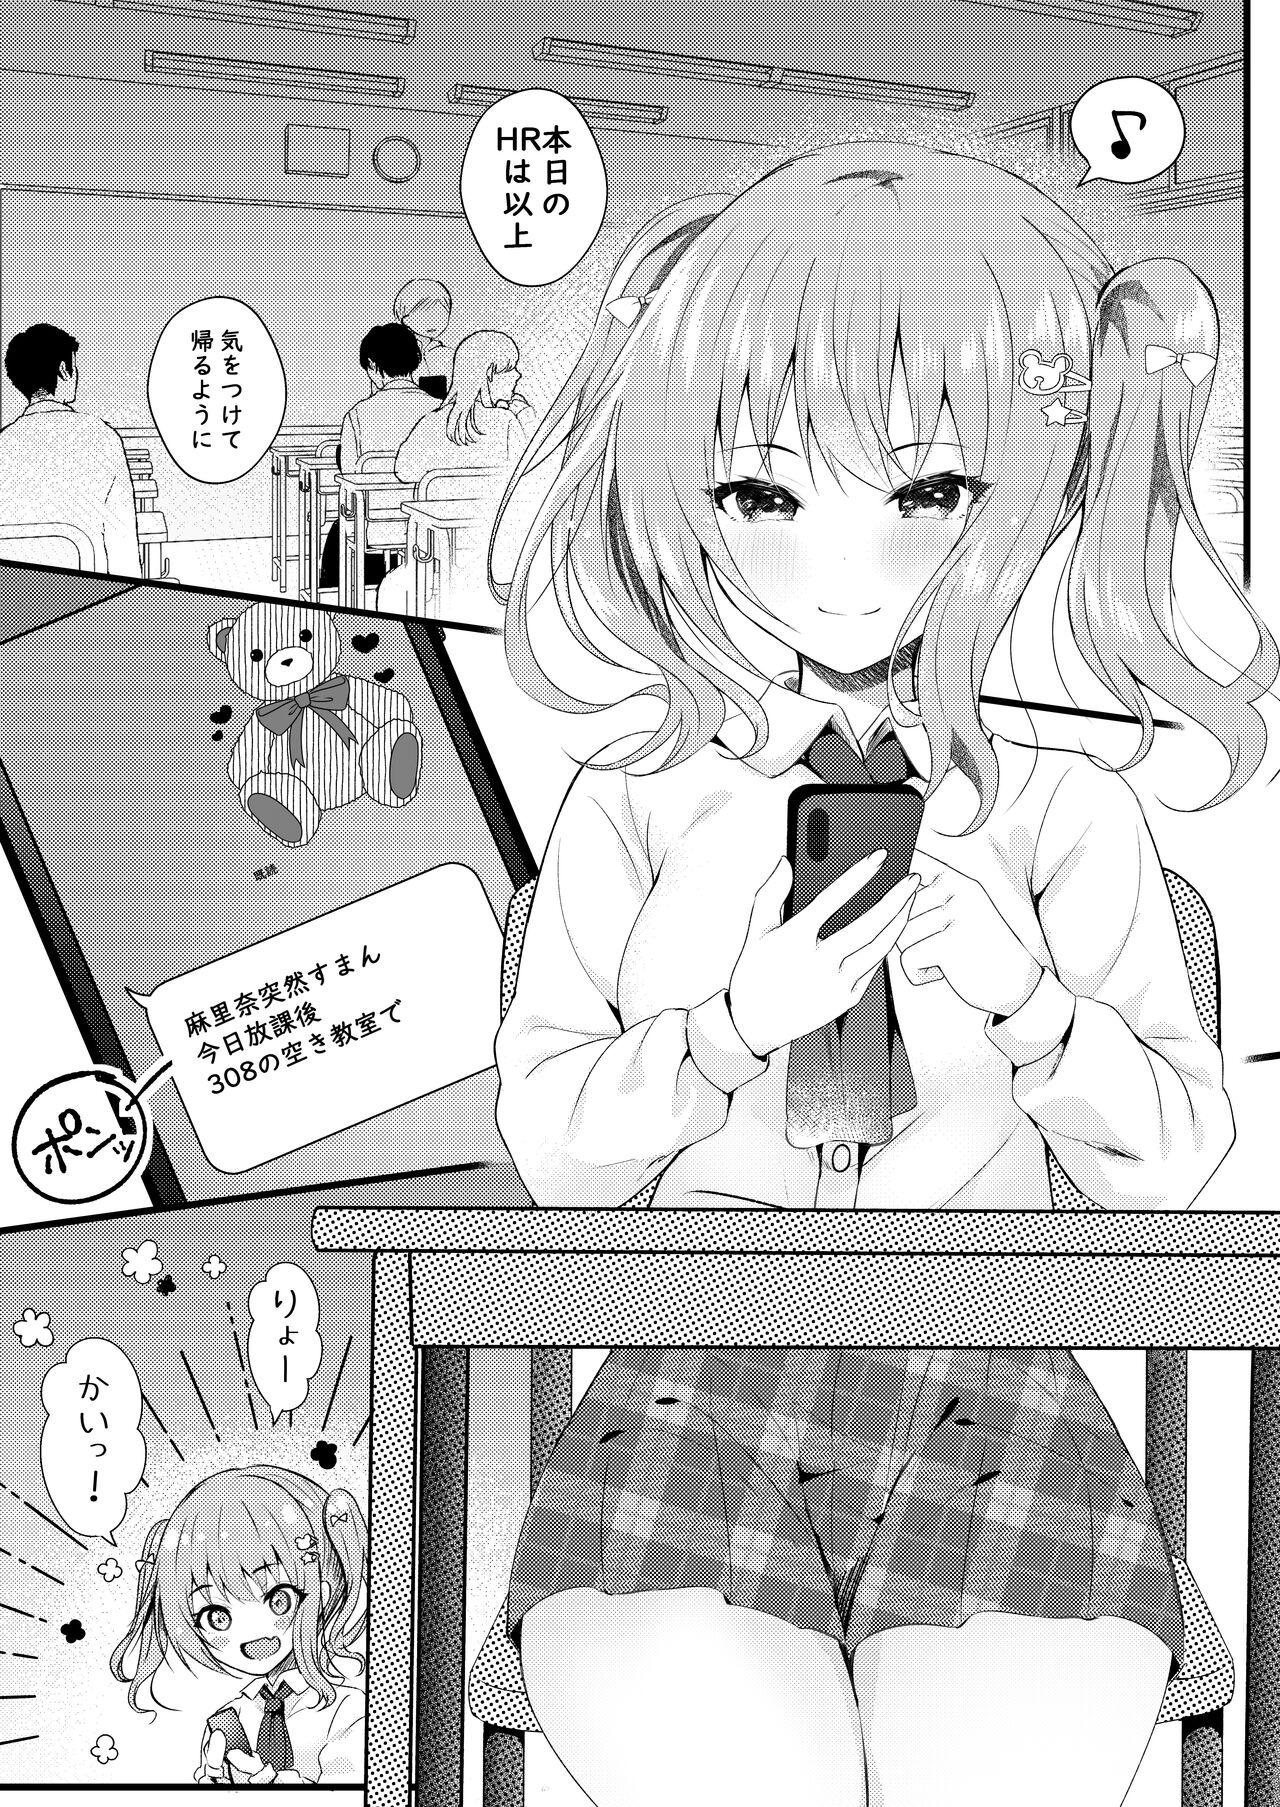 Rub Onii-chan no Yume no Tame ni - Original Sapphicerotica - Page 4